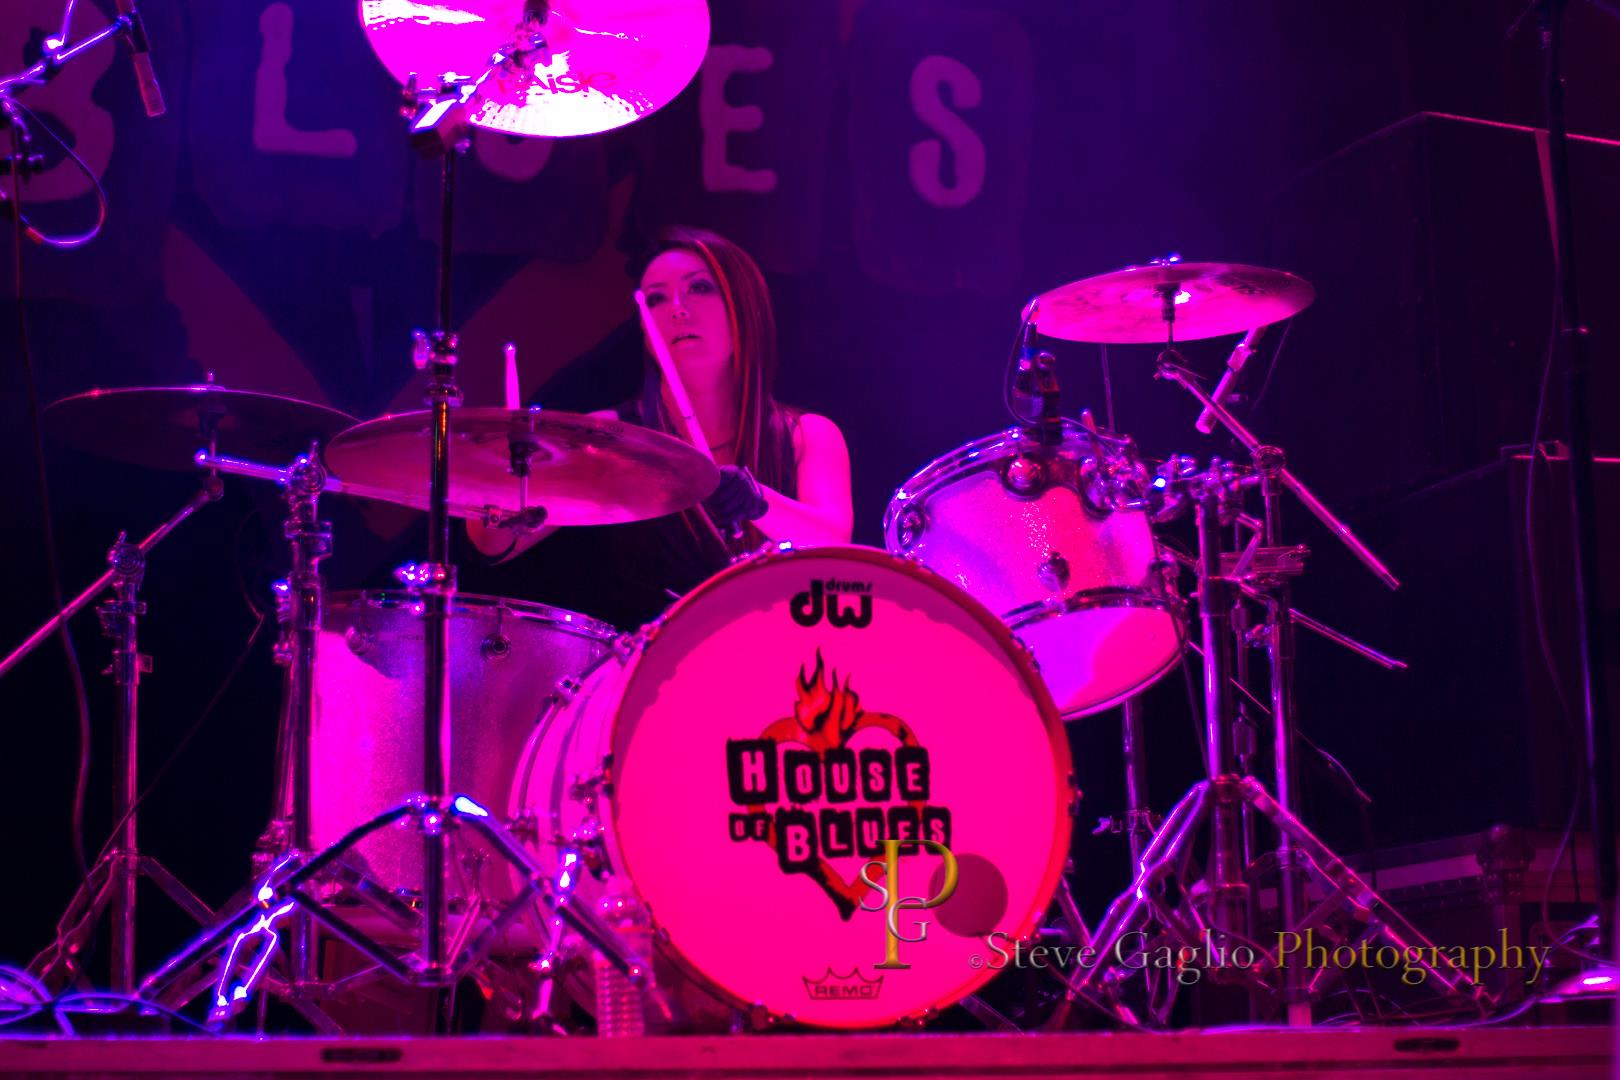 MIsai Drums